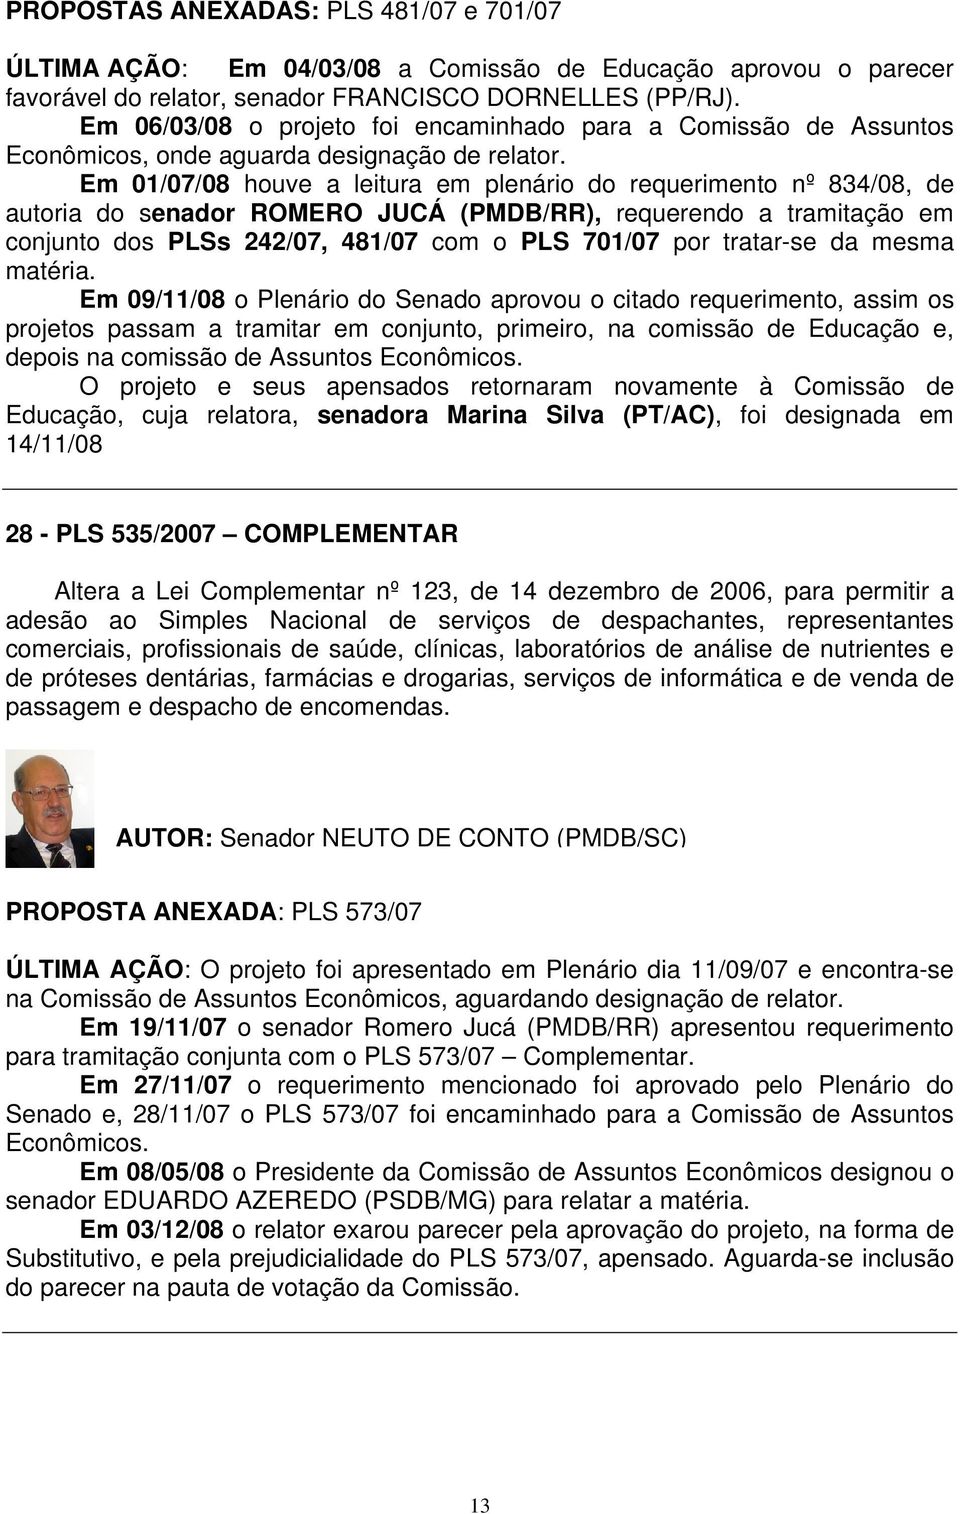 Em 01/07/08 houve a leitura em plenário do requerimento nº 834/08, de autoria do senador ROMERO JUCÁ (PMDB/RR), requerendo a tramitação em conjunto dos PLSs 242/07, 481/07 com o PLS 701/07 por